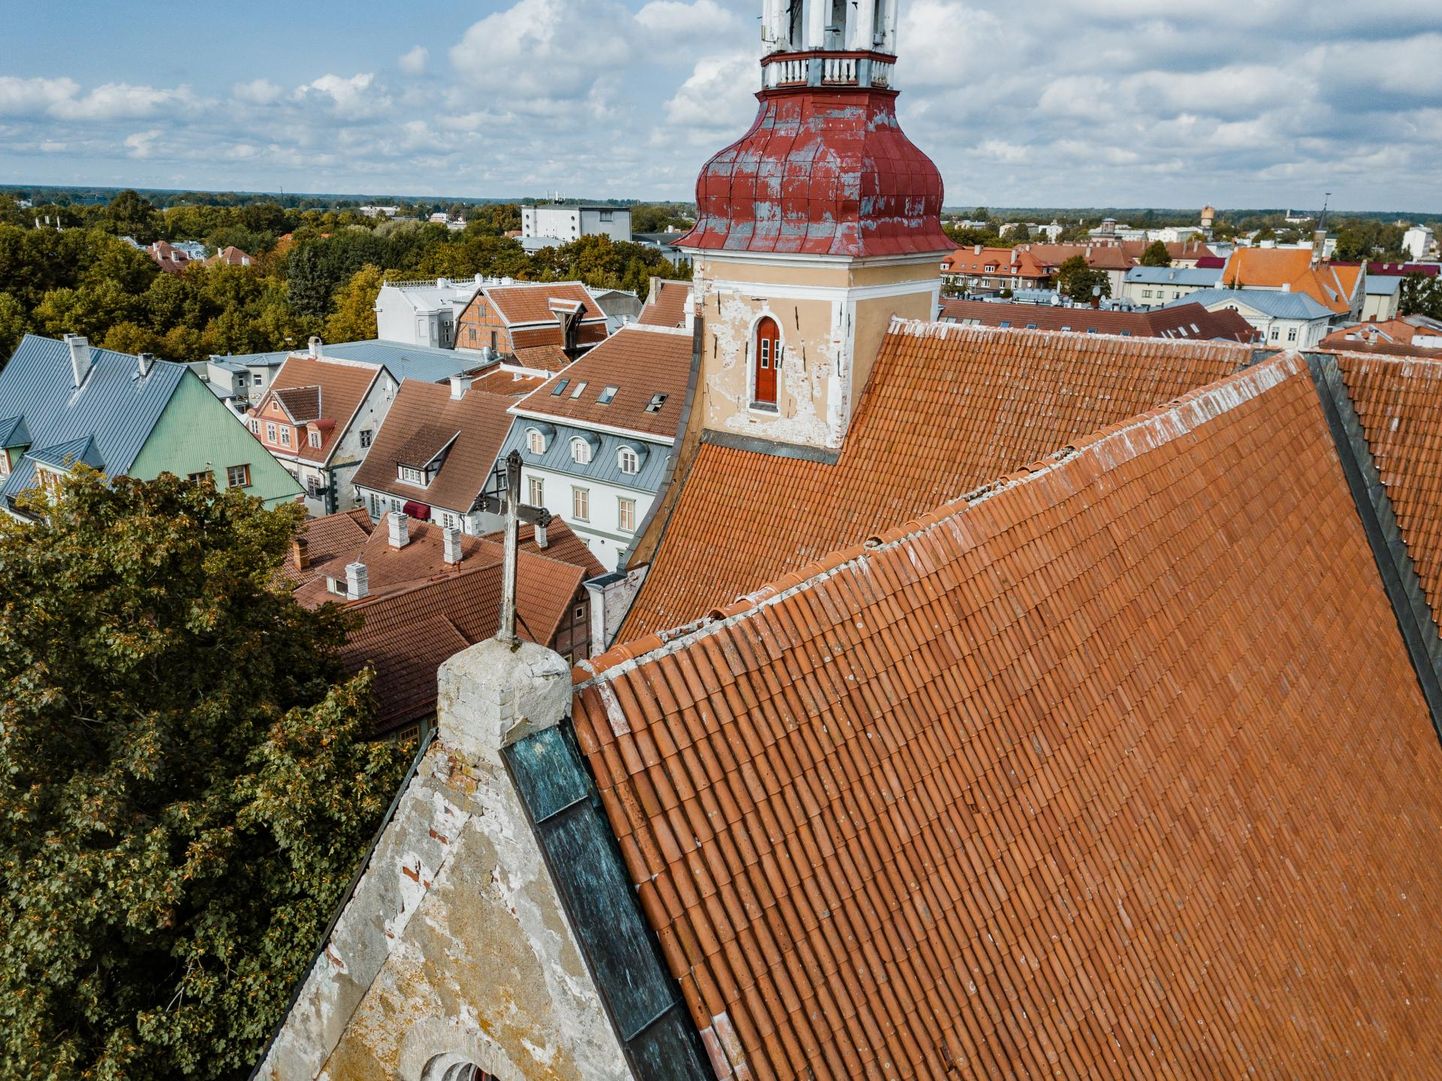 Möödunud aastal sai toetust ka Pärnu Eliisabeti kirik, 40 000eurose toetuse abil renoveeriti kiriku katus.